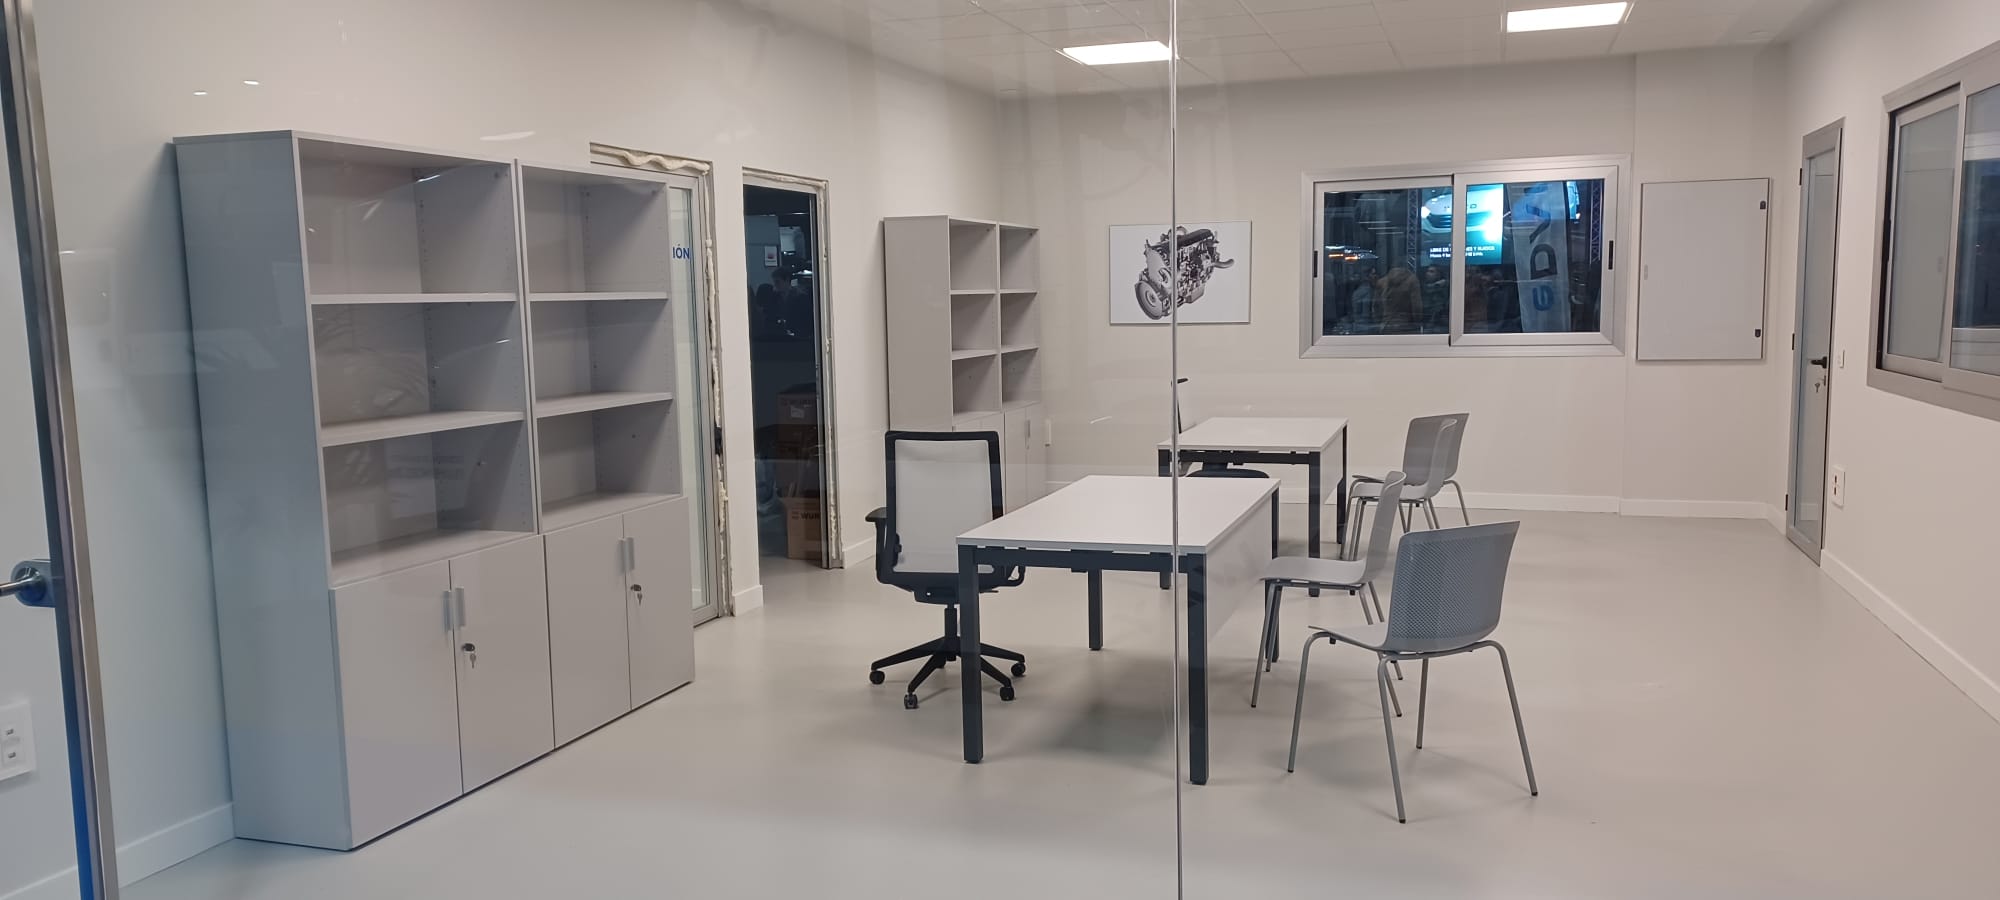 veimancha-iveco-mobiliario-oficina-decoracion-descanso-forma5 